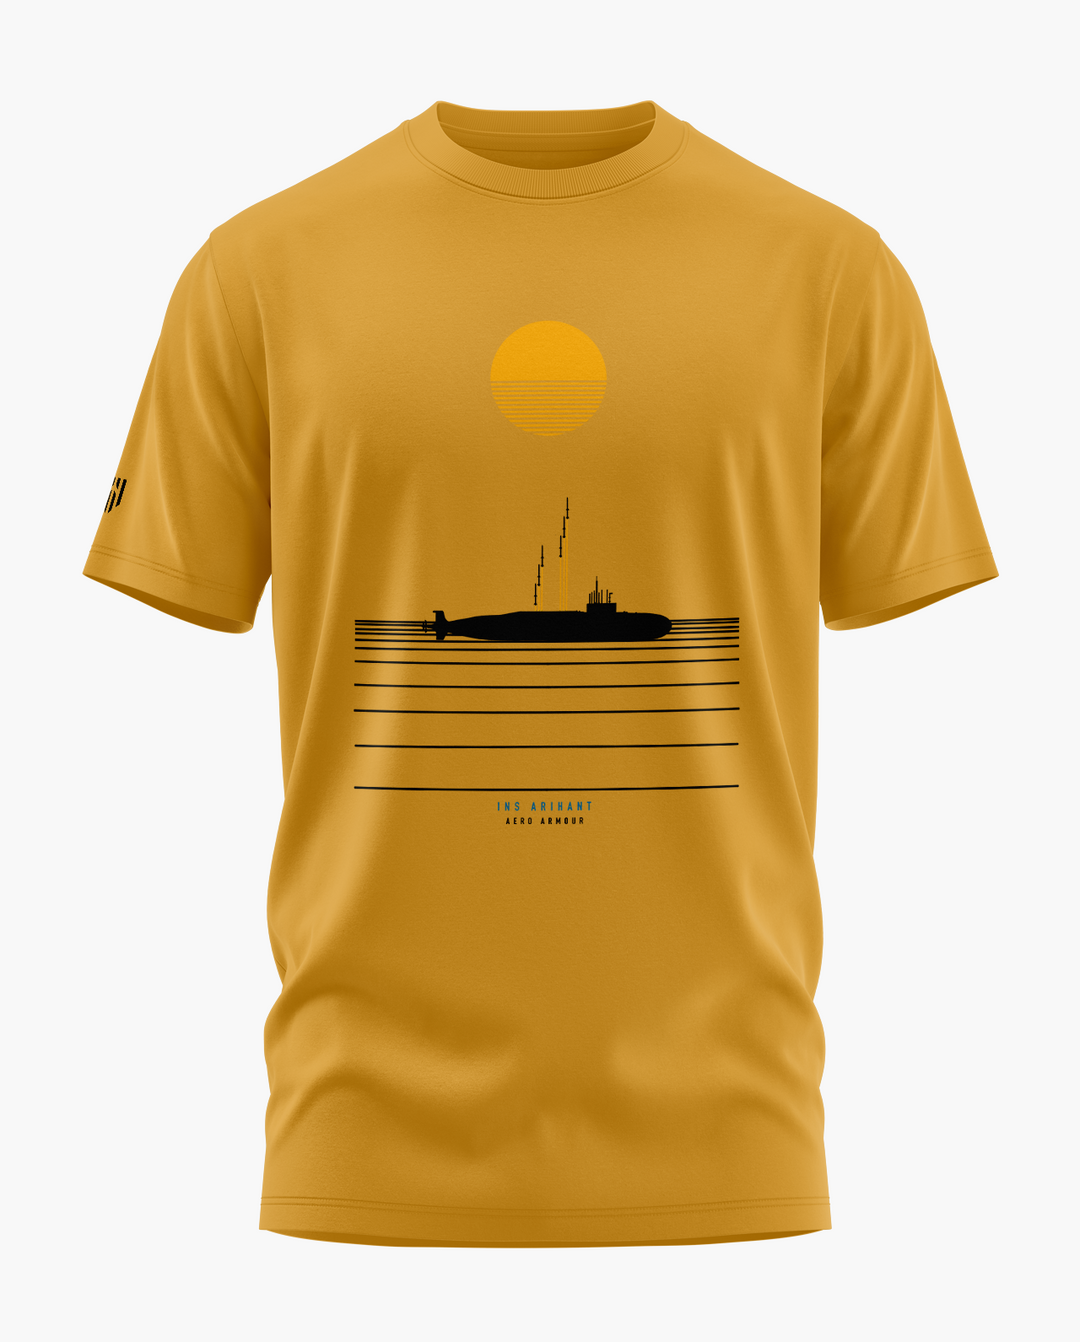 INS Arihant Horizon T-Shirt